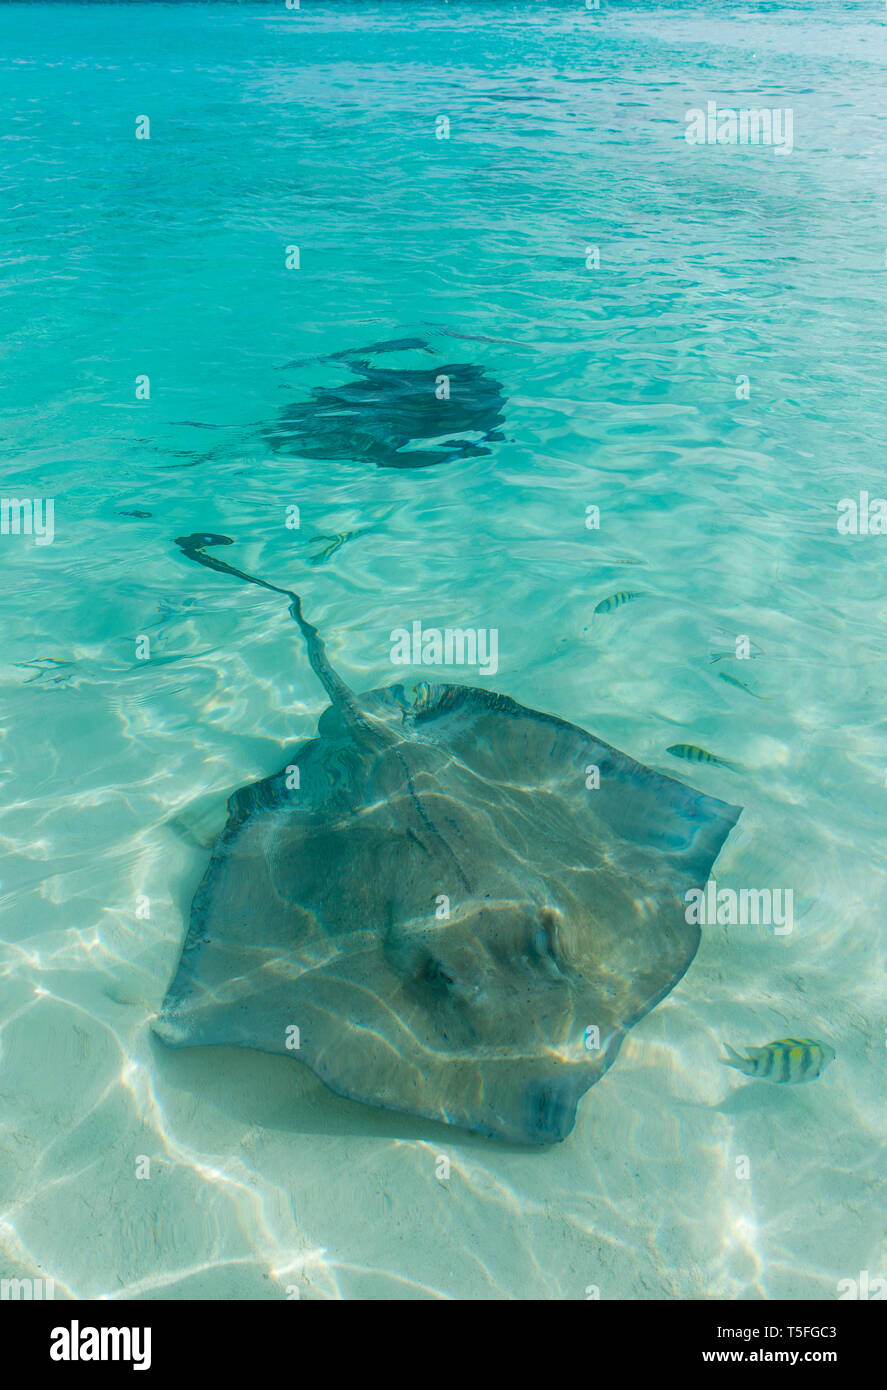 Caraïbes, Bahamas, Exuma, raies nager dans les eaux turquoise clair Banque D'Images